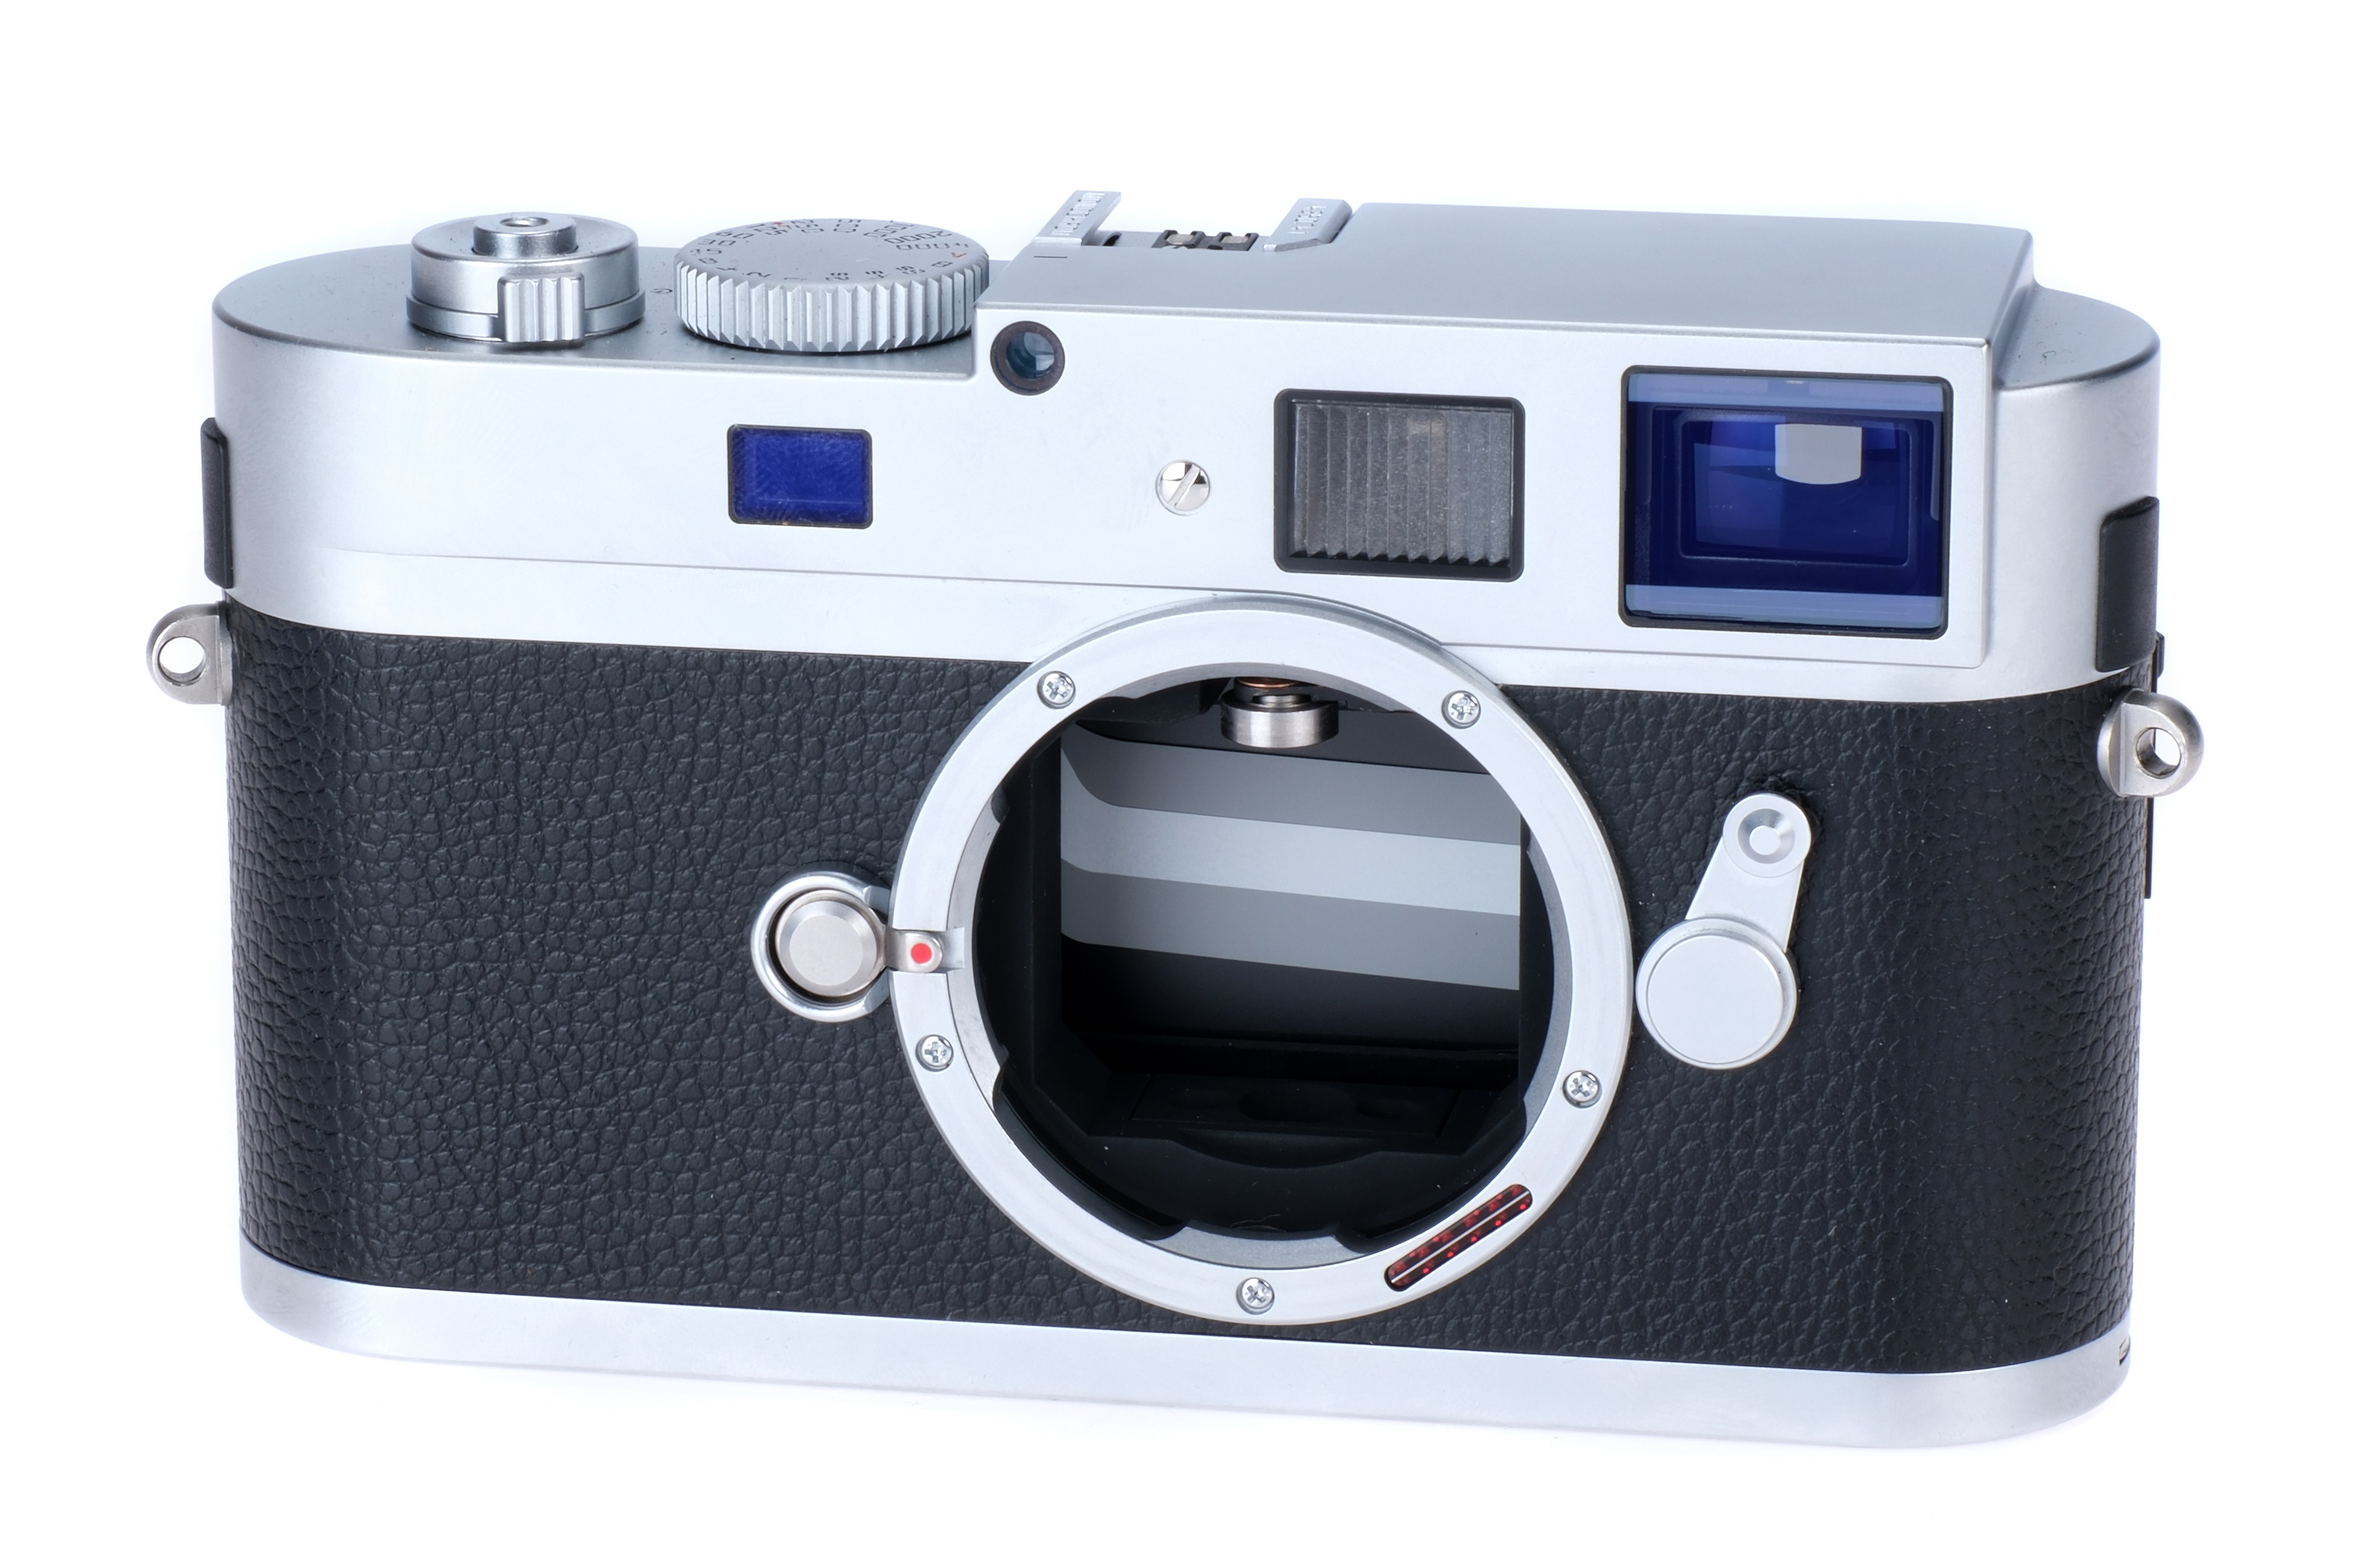 A Leica M Monochrom Digital Rangefinder Body,